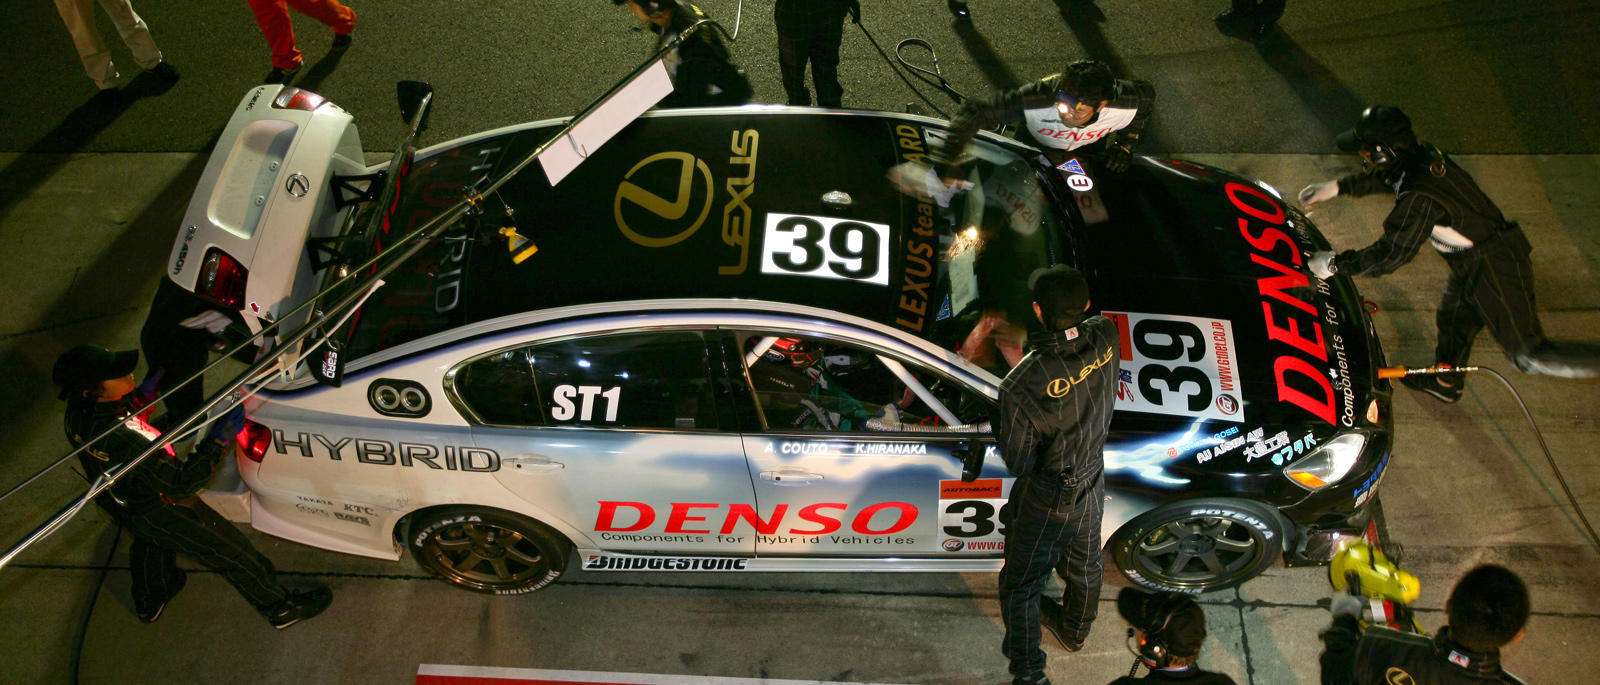 2006年に十勝24時間レースに出場したレクサスGS450h